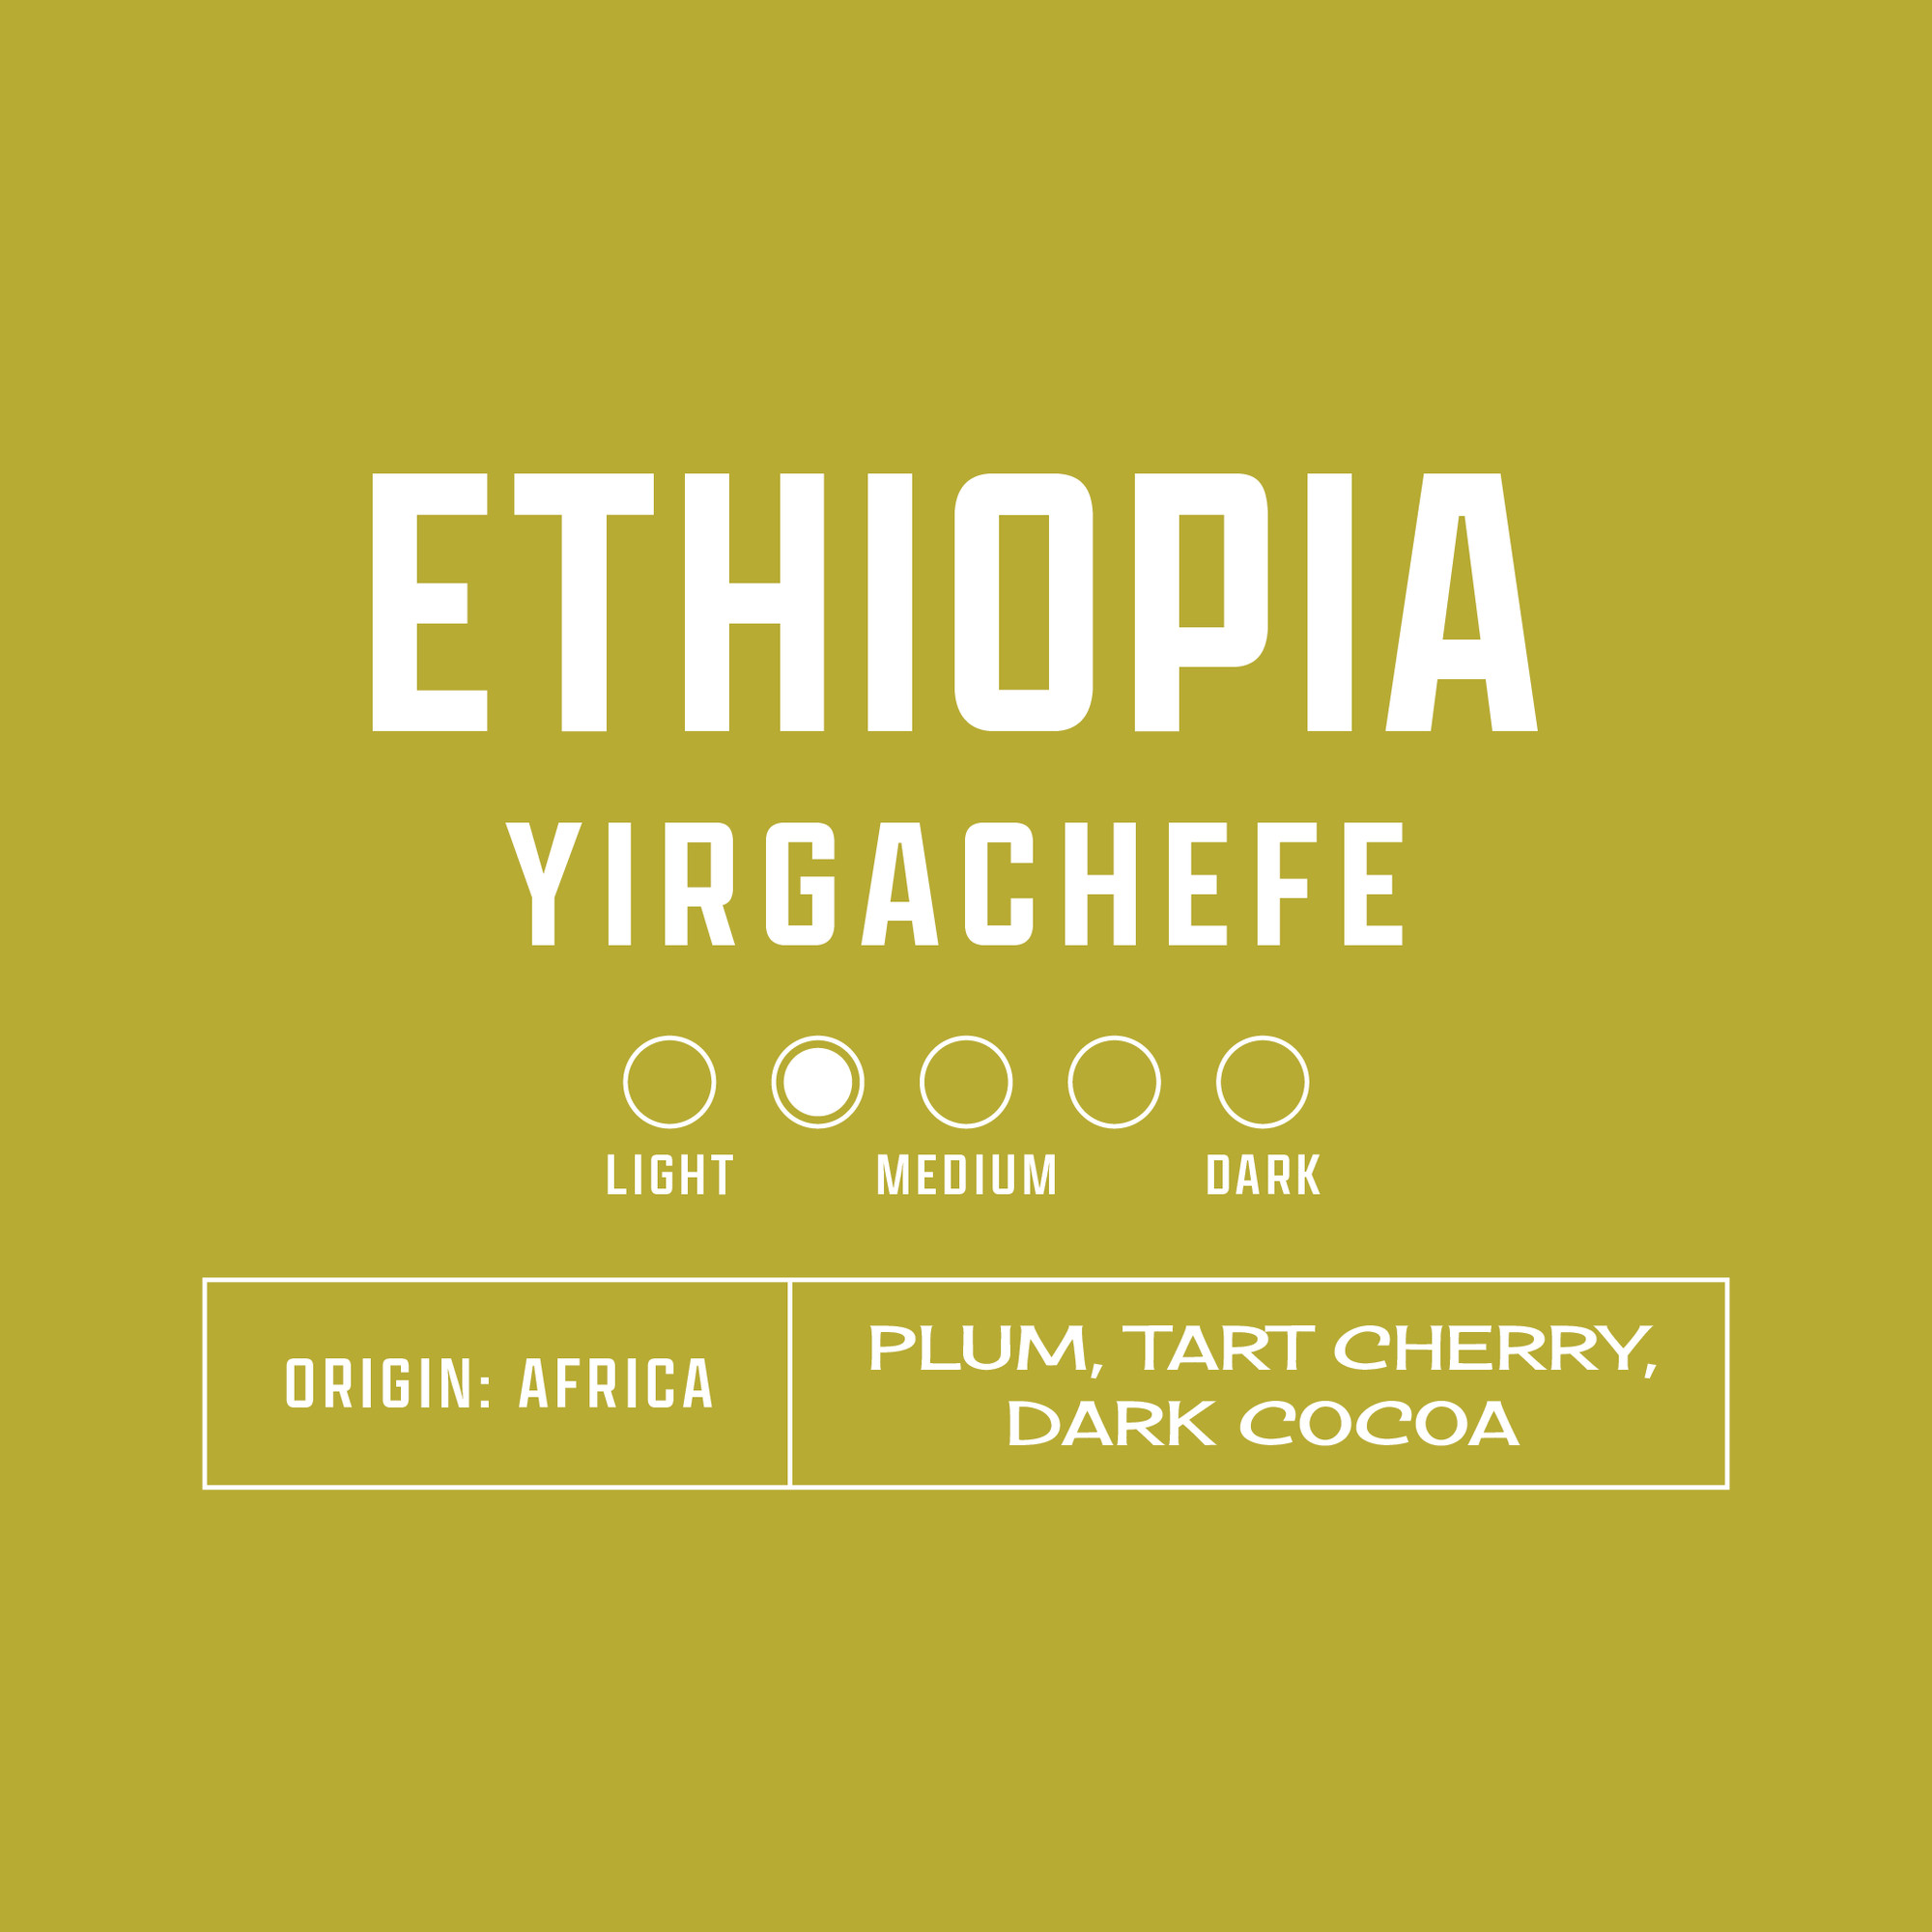 Ethiopia Yirgachefe